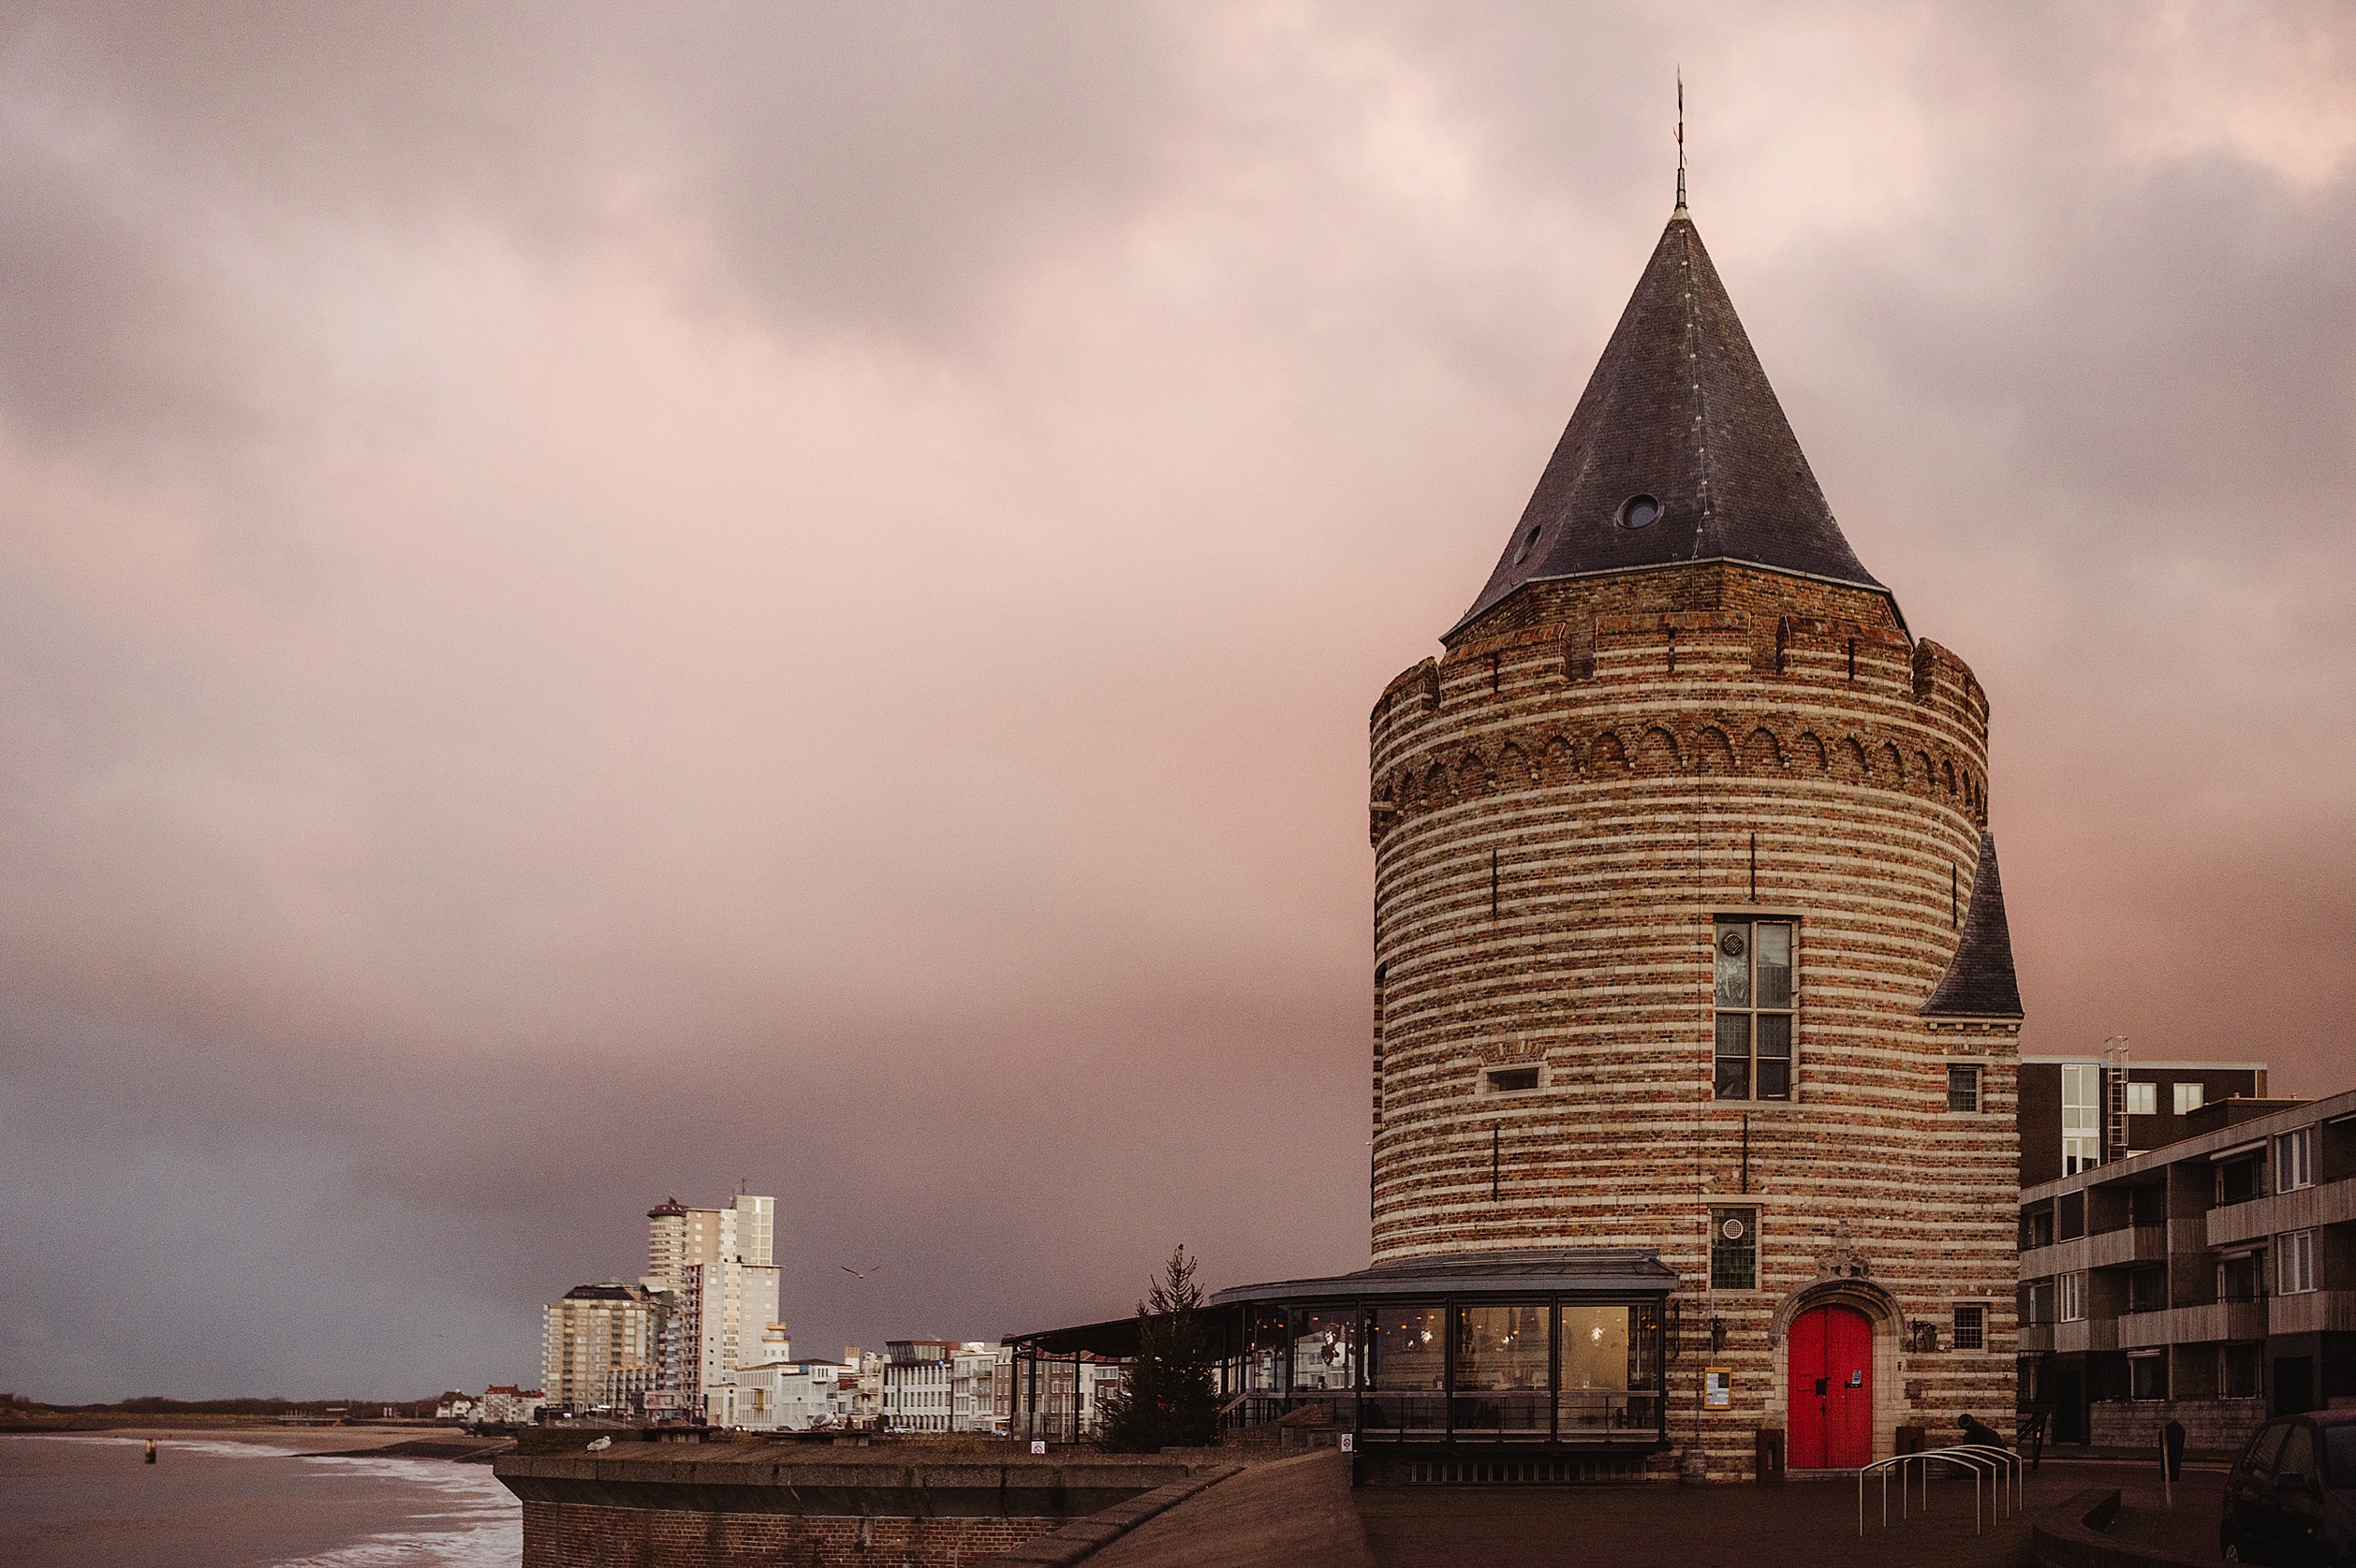 Dormir dans une tour face à la mer aux Pays-Bas